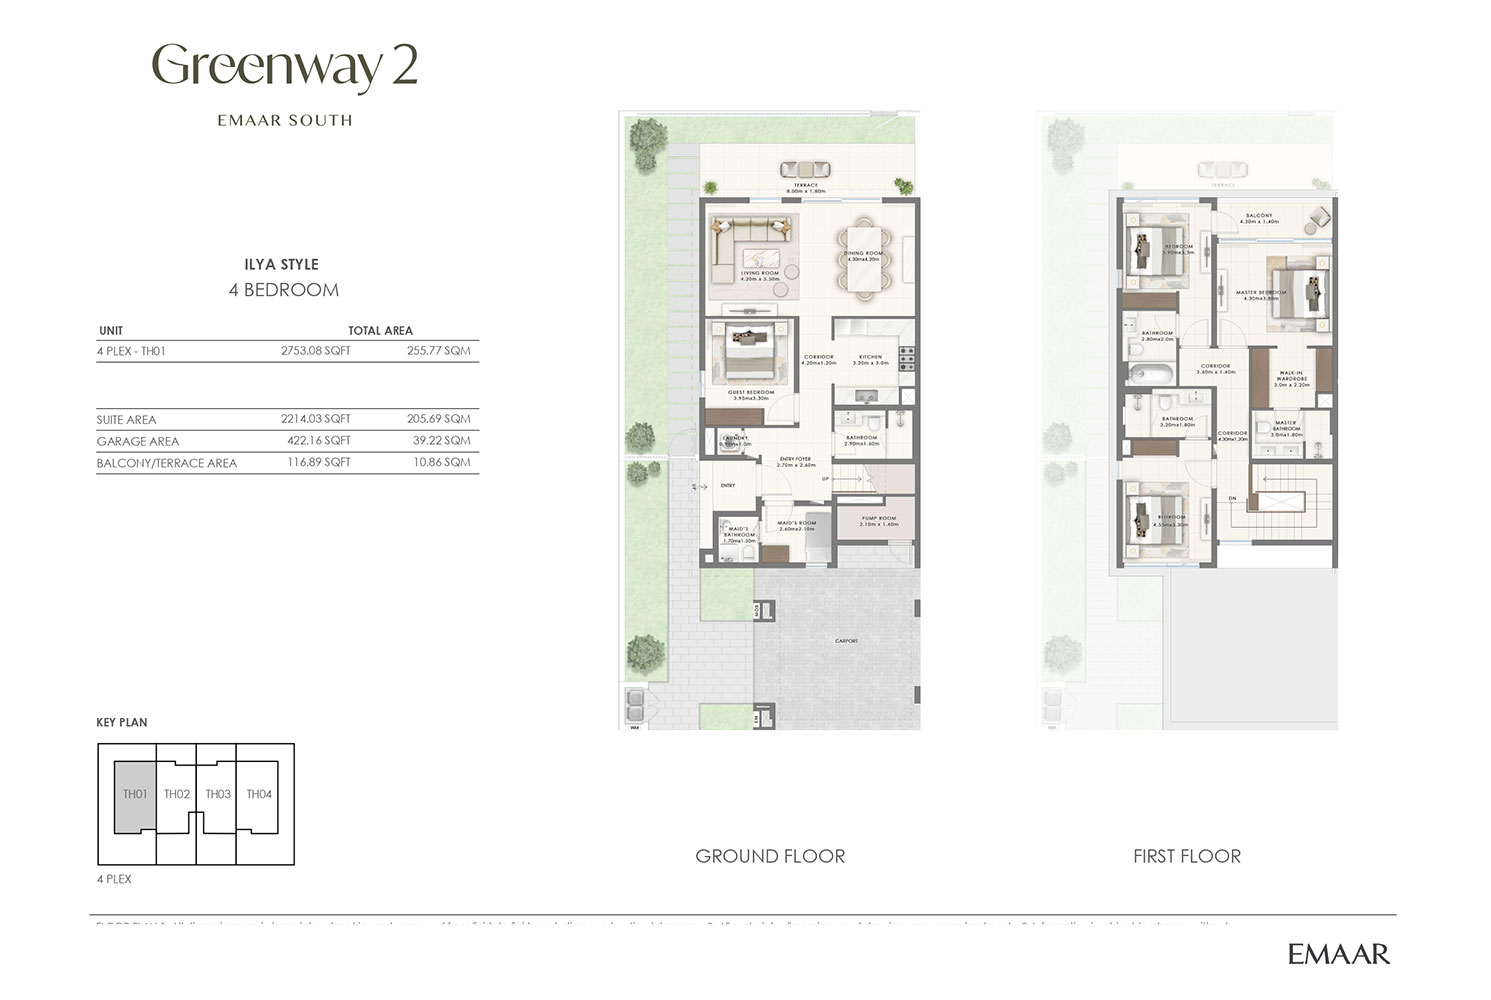 4 Bedroom Townhouses Floor Plan